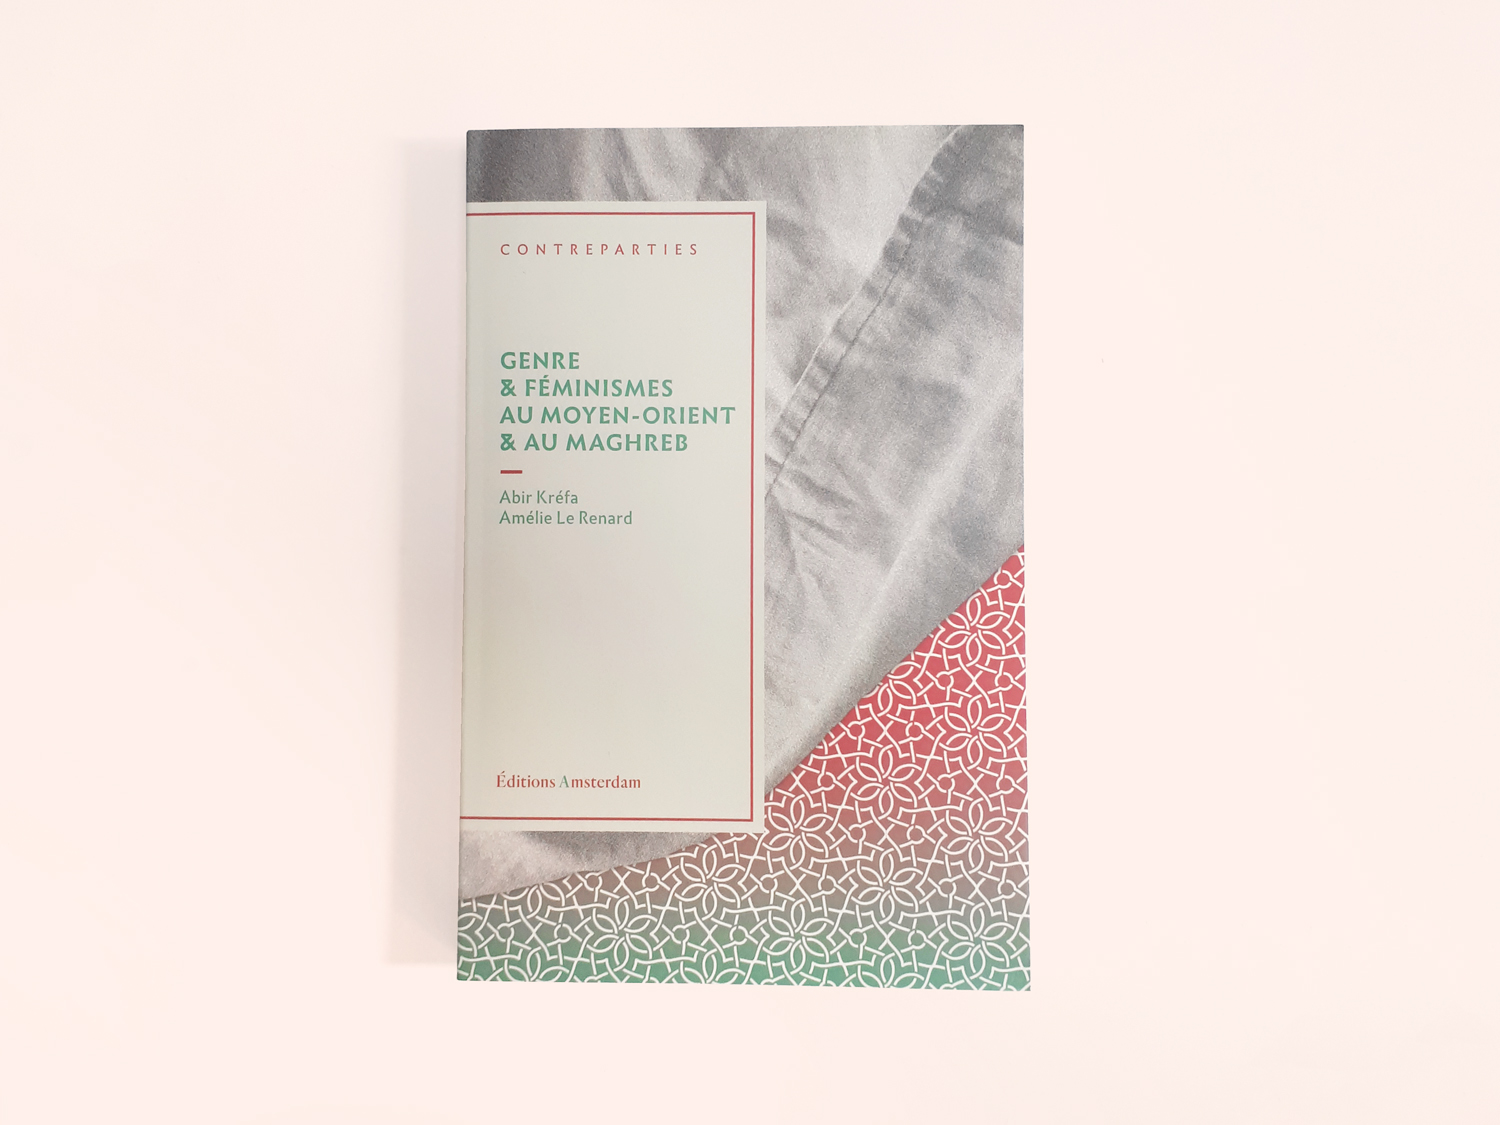 Conception graphique des couvertures de la collection Contrepartie des éditions Amsterdam. Quatrième de couverture du titre Genre & féminismes